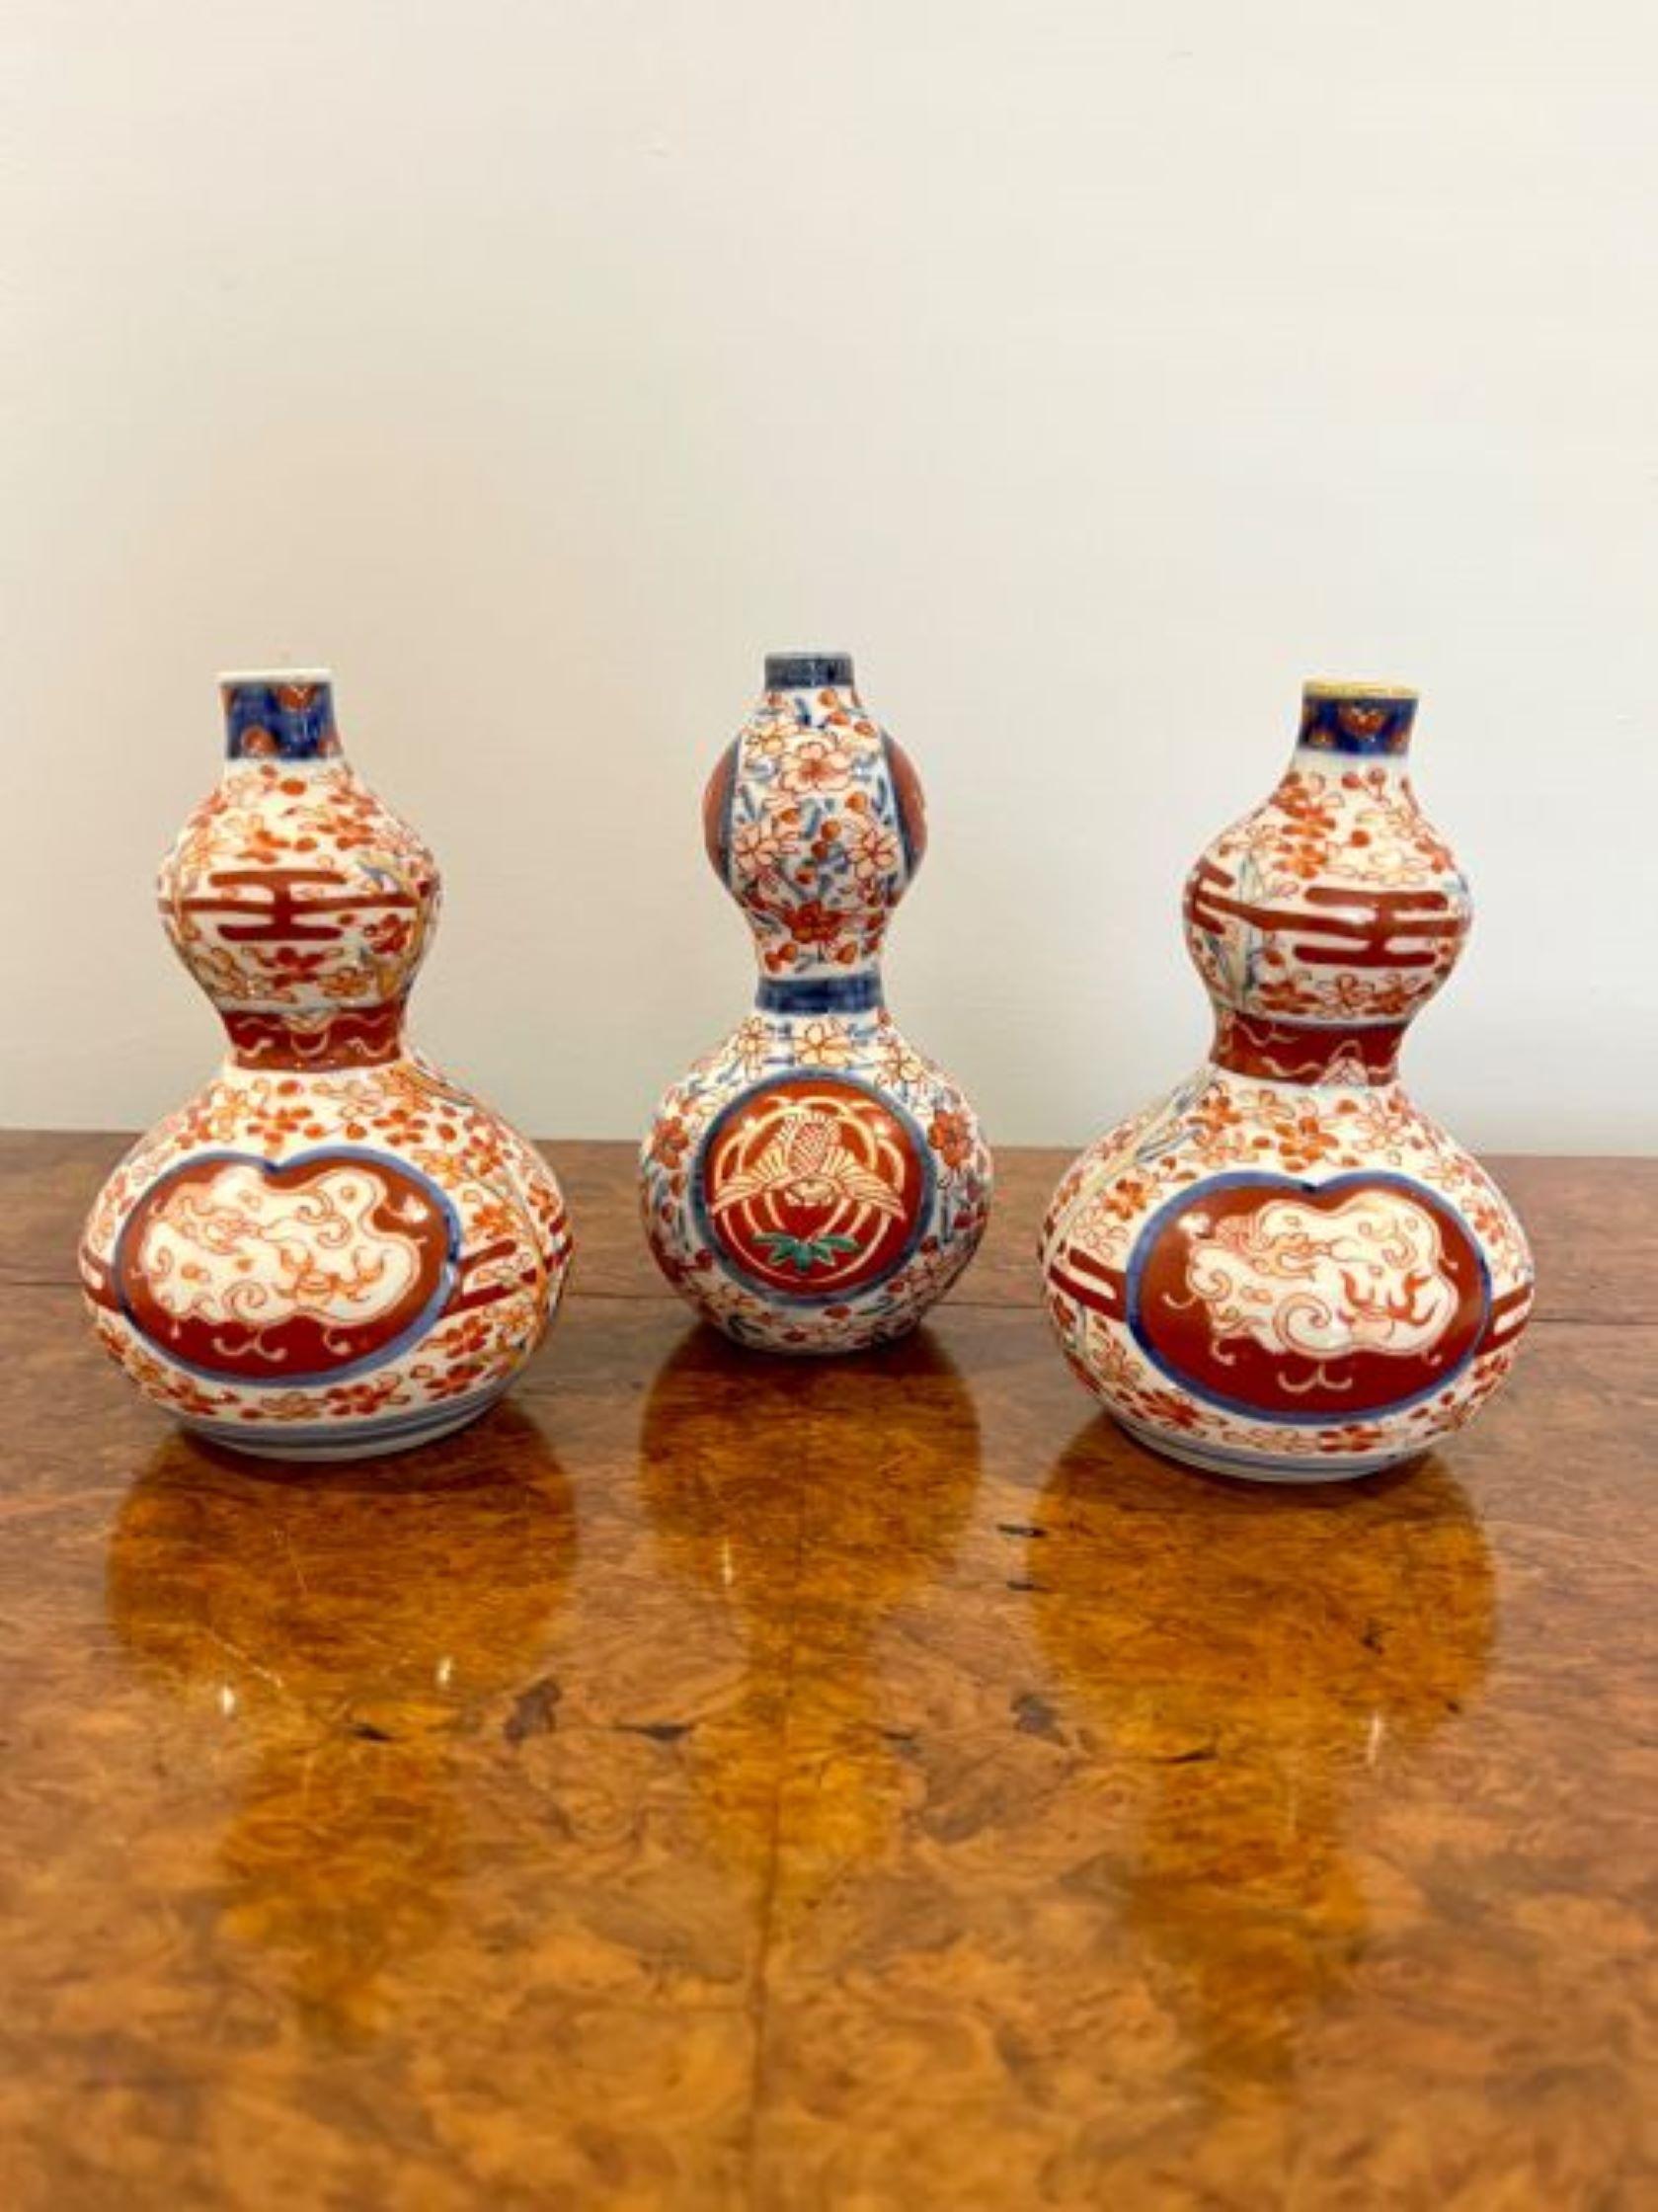 Collection de qualité de cinq petits vases japonais anciens de forme Imari, comprenant cinq vases de forme différente peints à la main dans de magnifiques couleurs rouge, bleu, orange et blanc, décorés de fleurs, de feuilles et de rinceaux. 